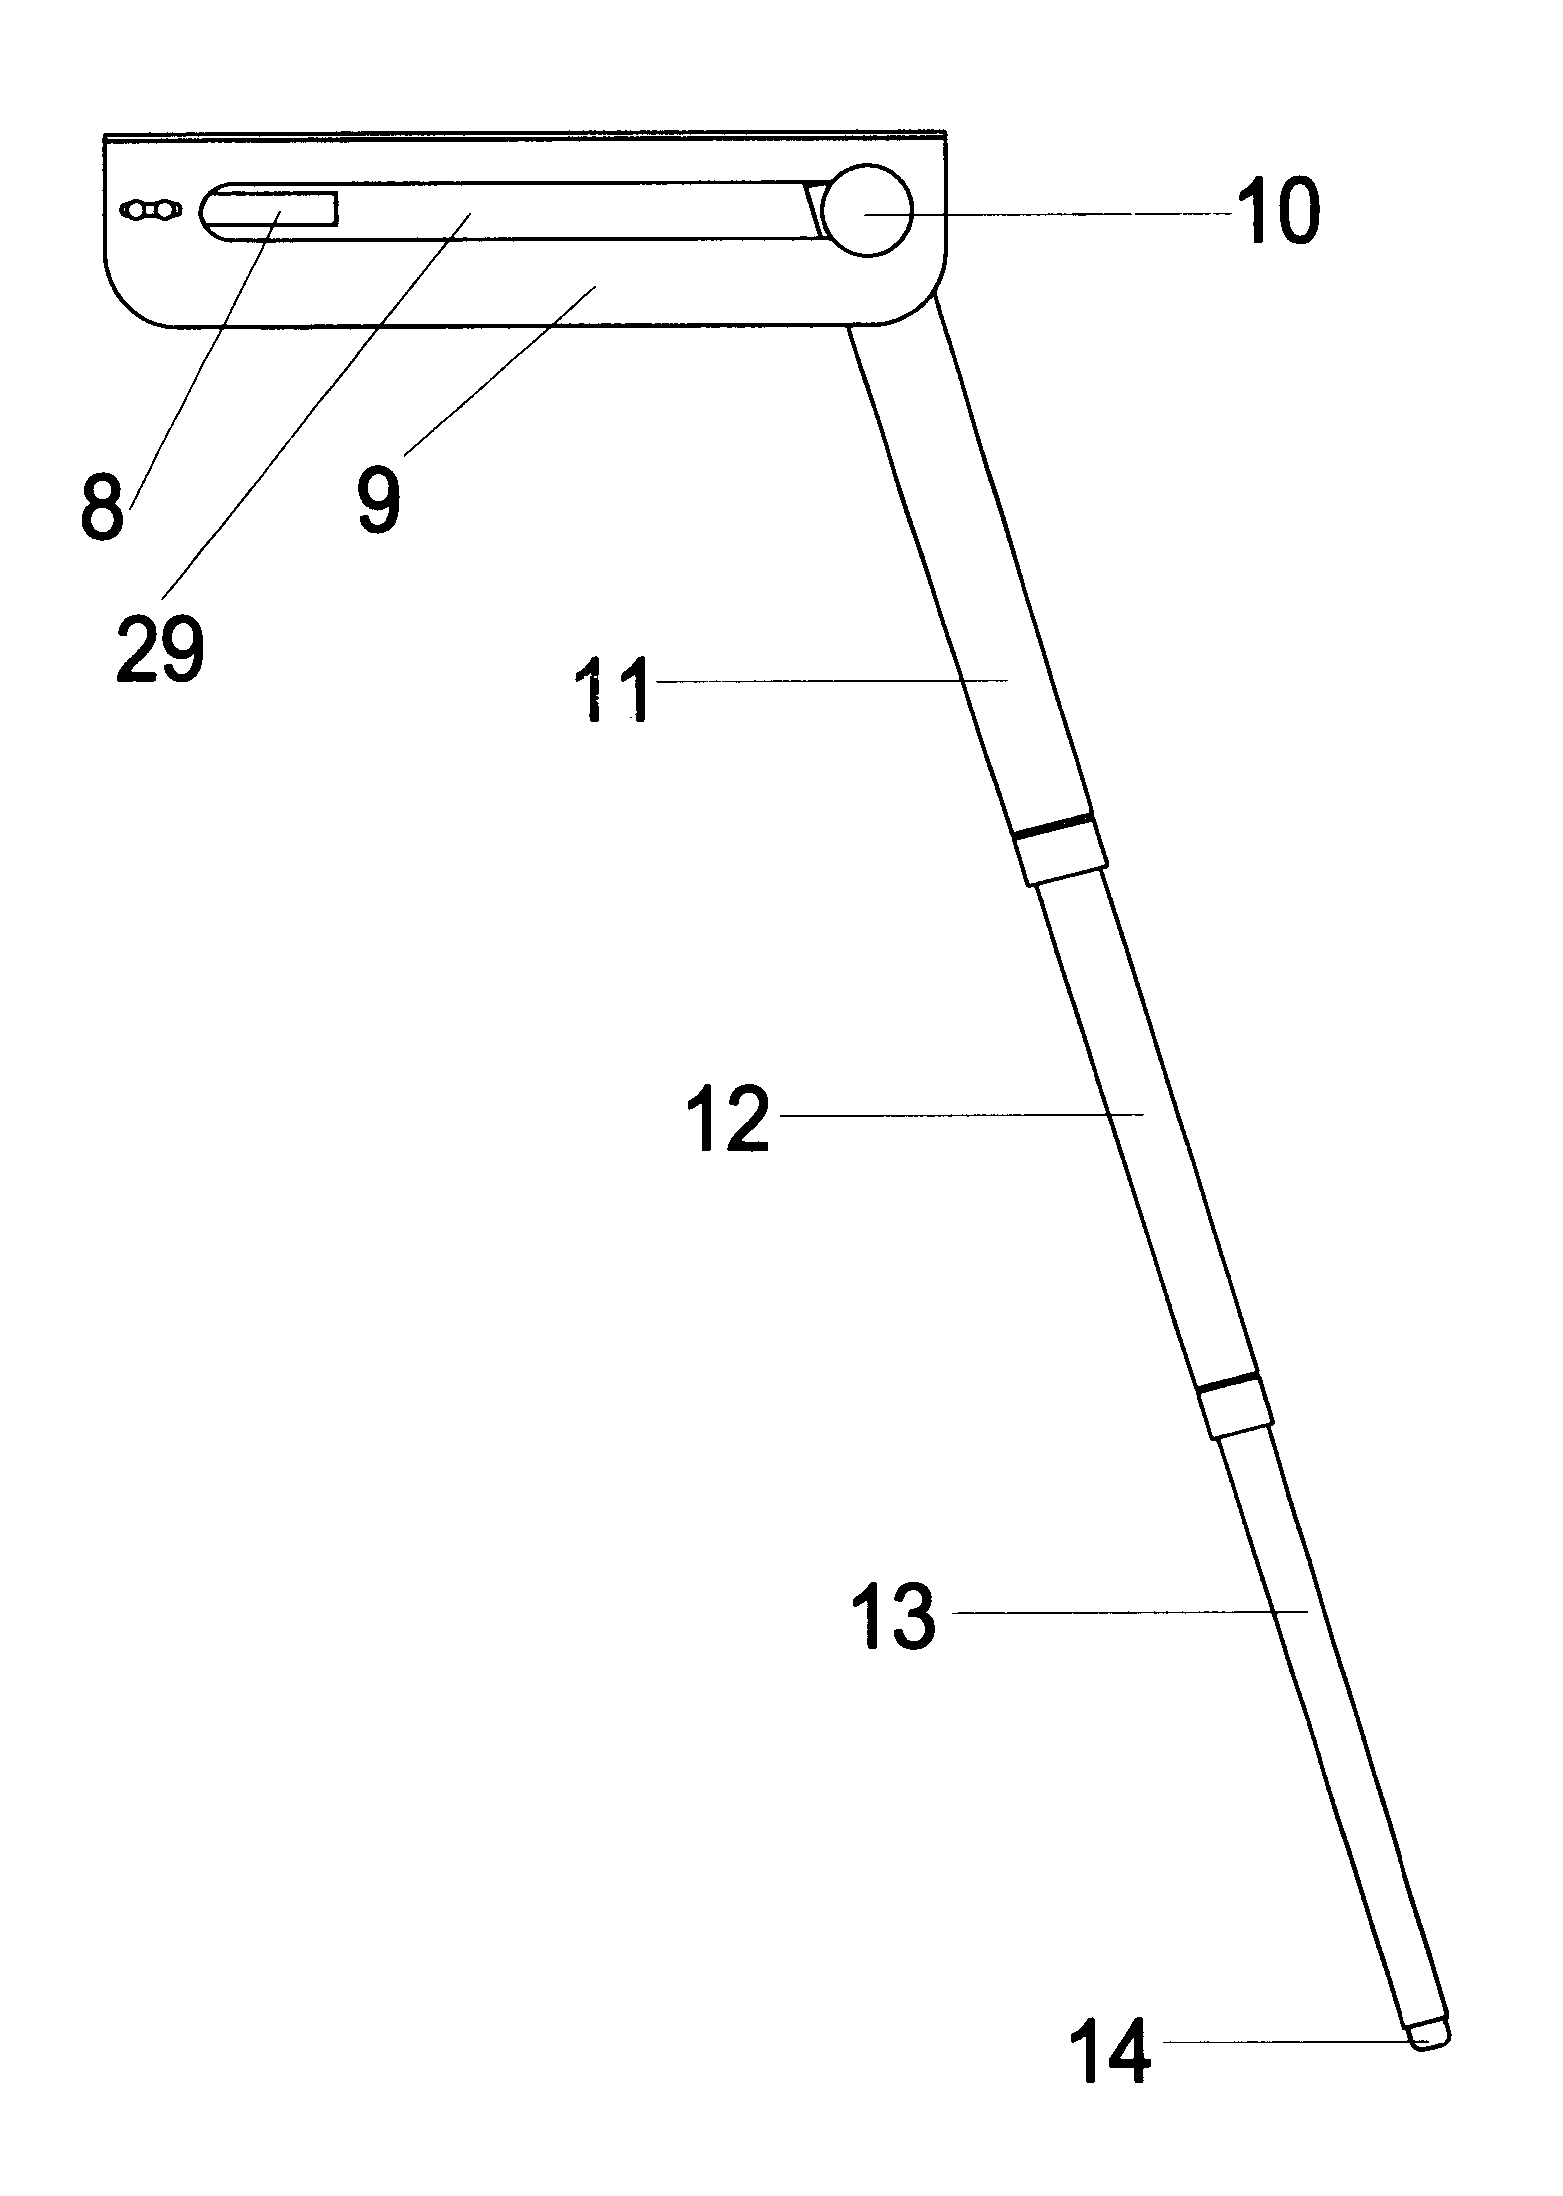 Ladder latch system